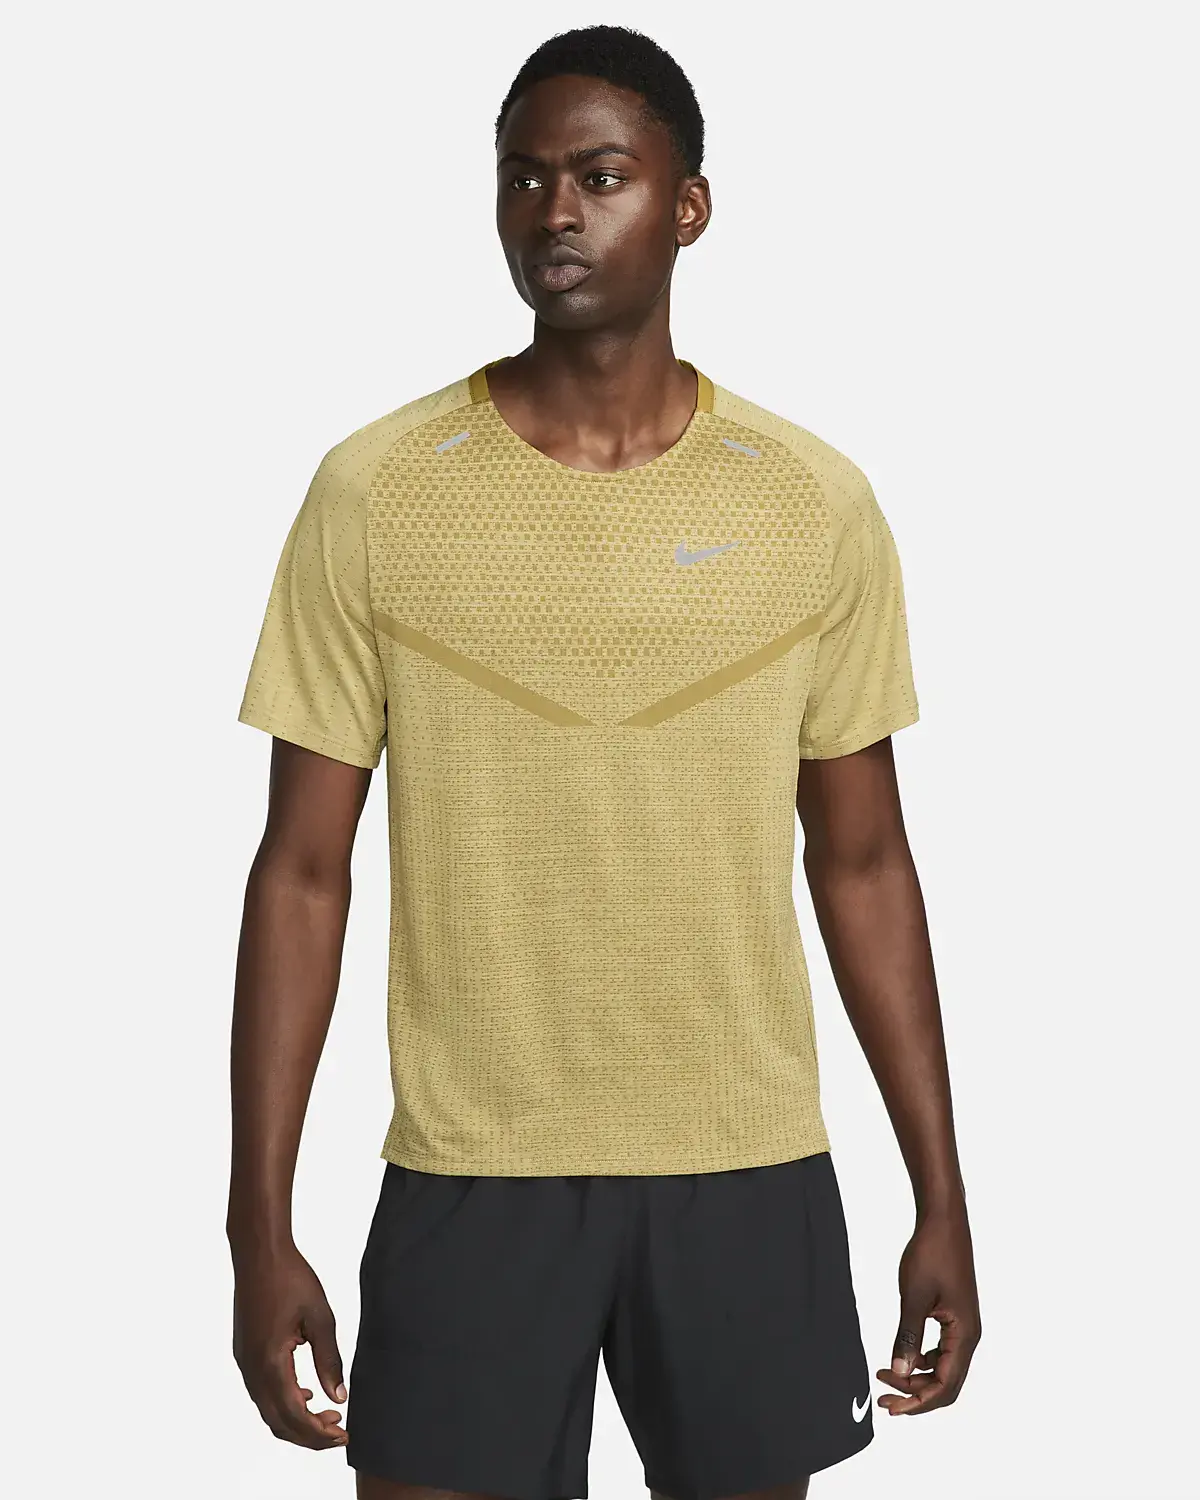 Nike Tech Knit. 1